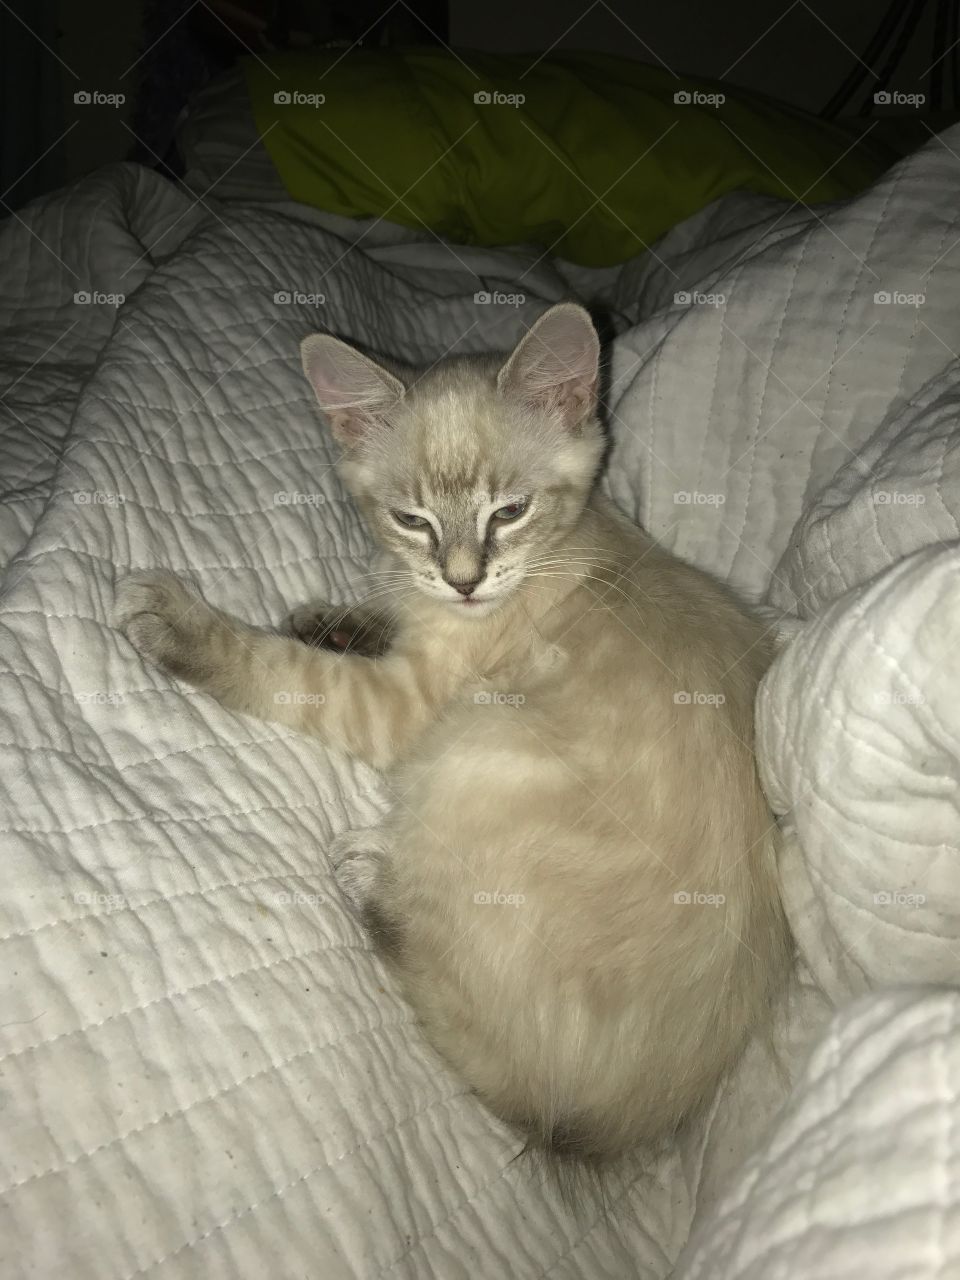 One little kitty kitten on the bed